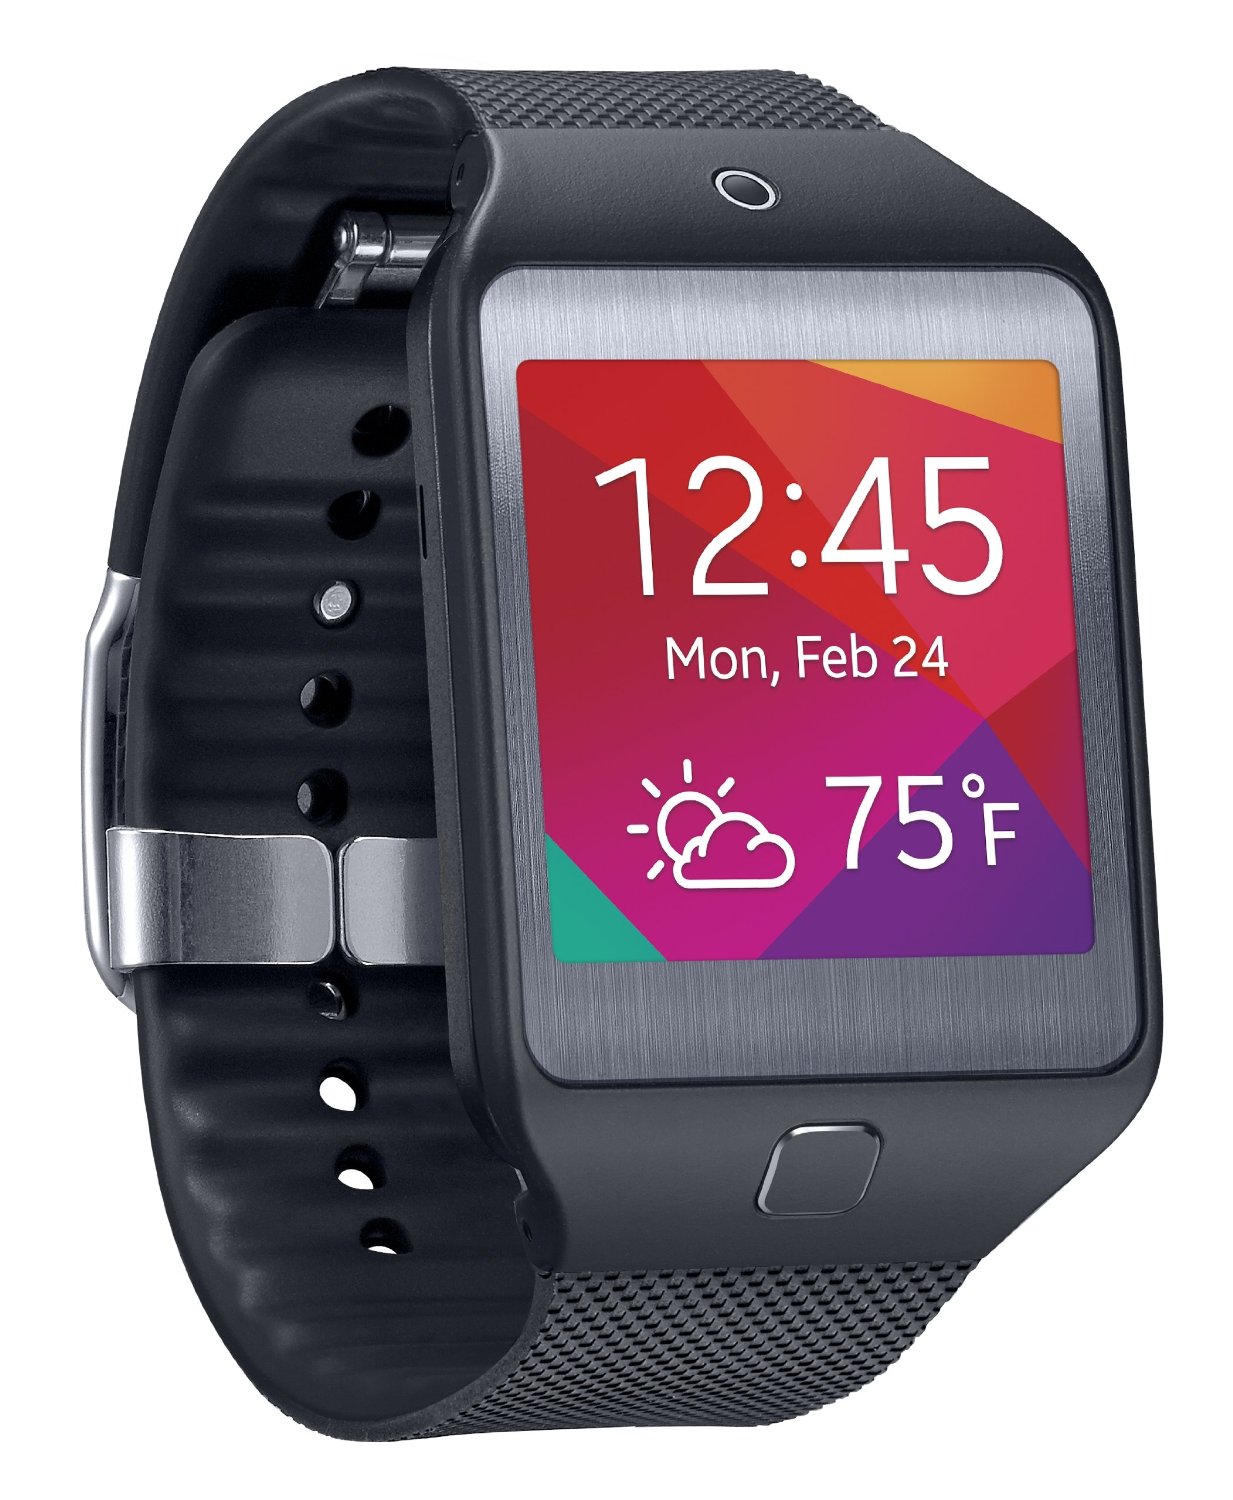 Samsung Gear 2 smart watch review